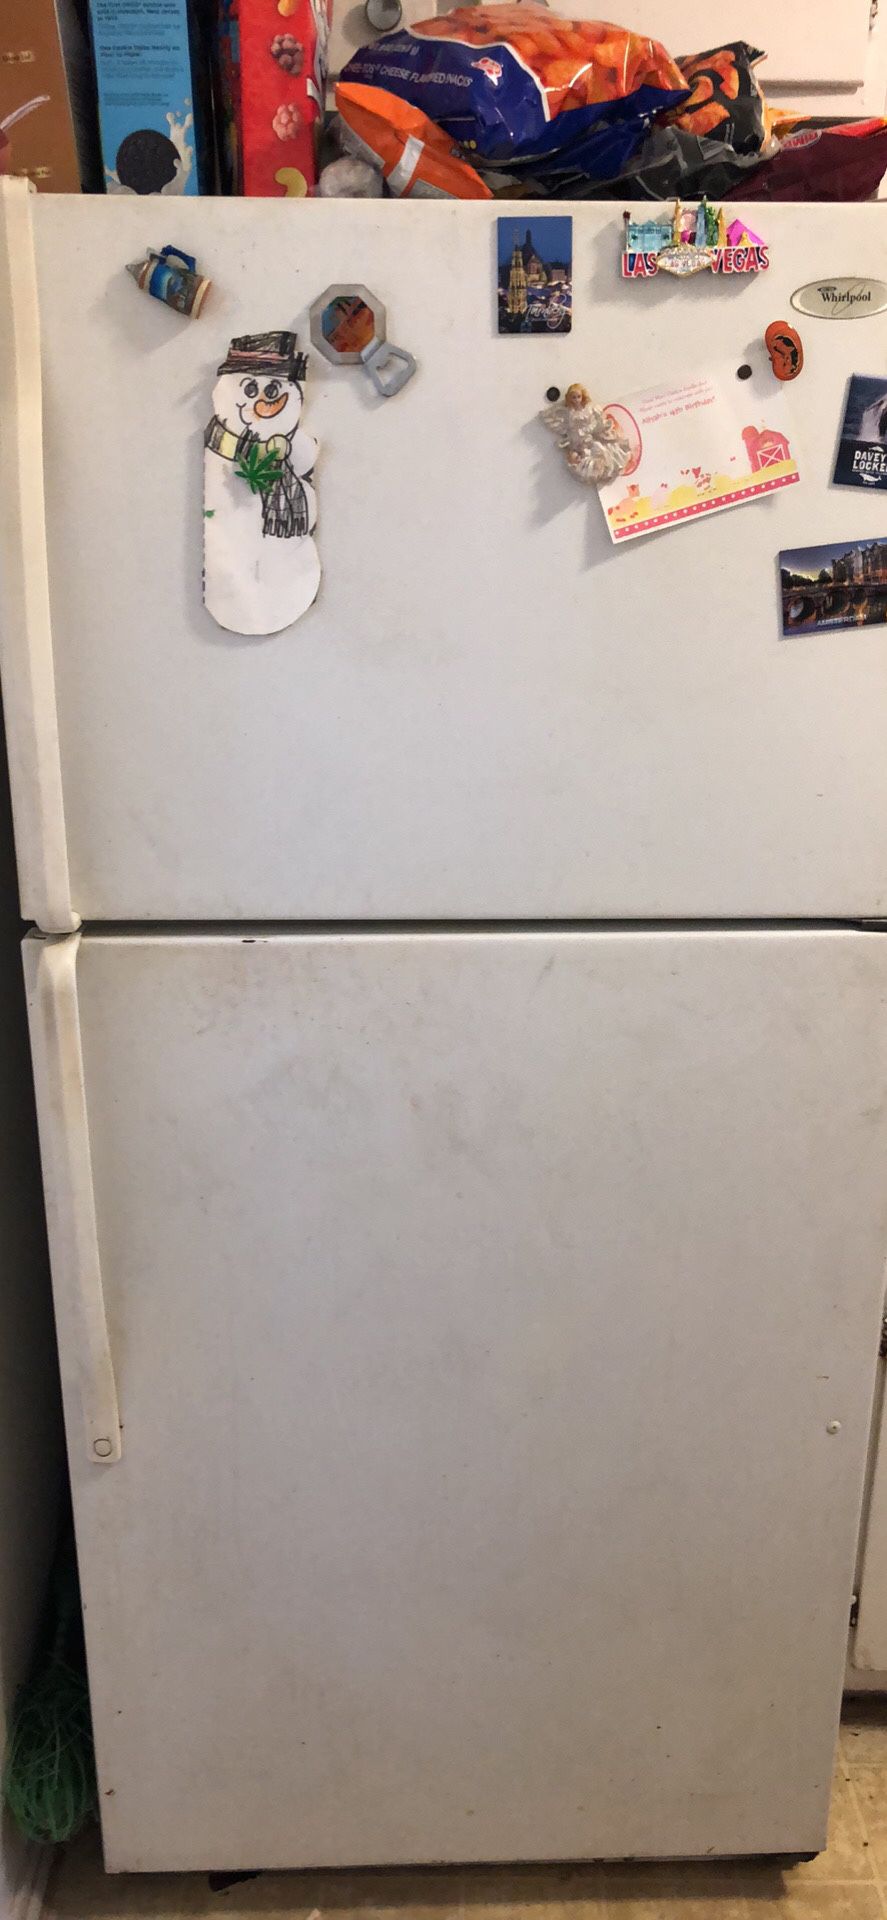 Free refrigerator